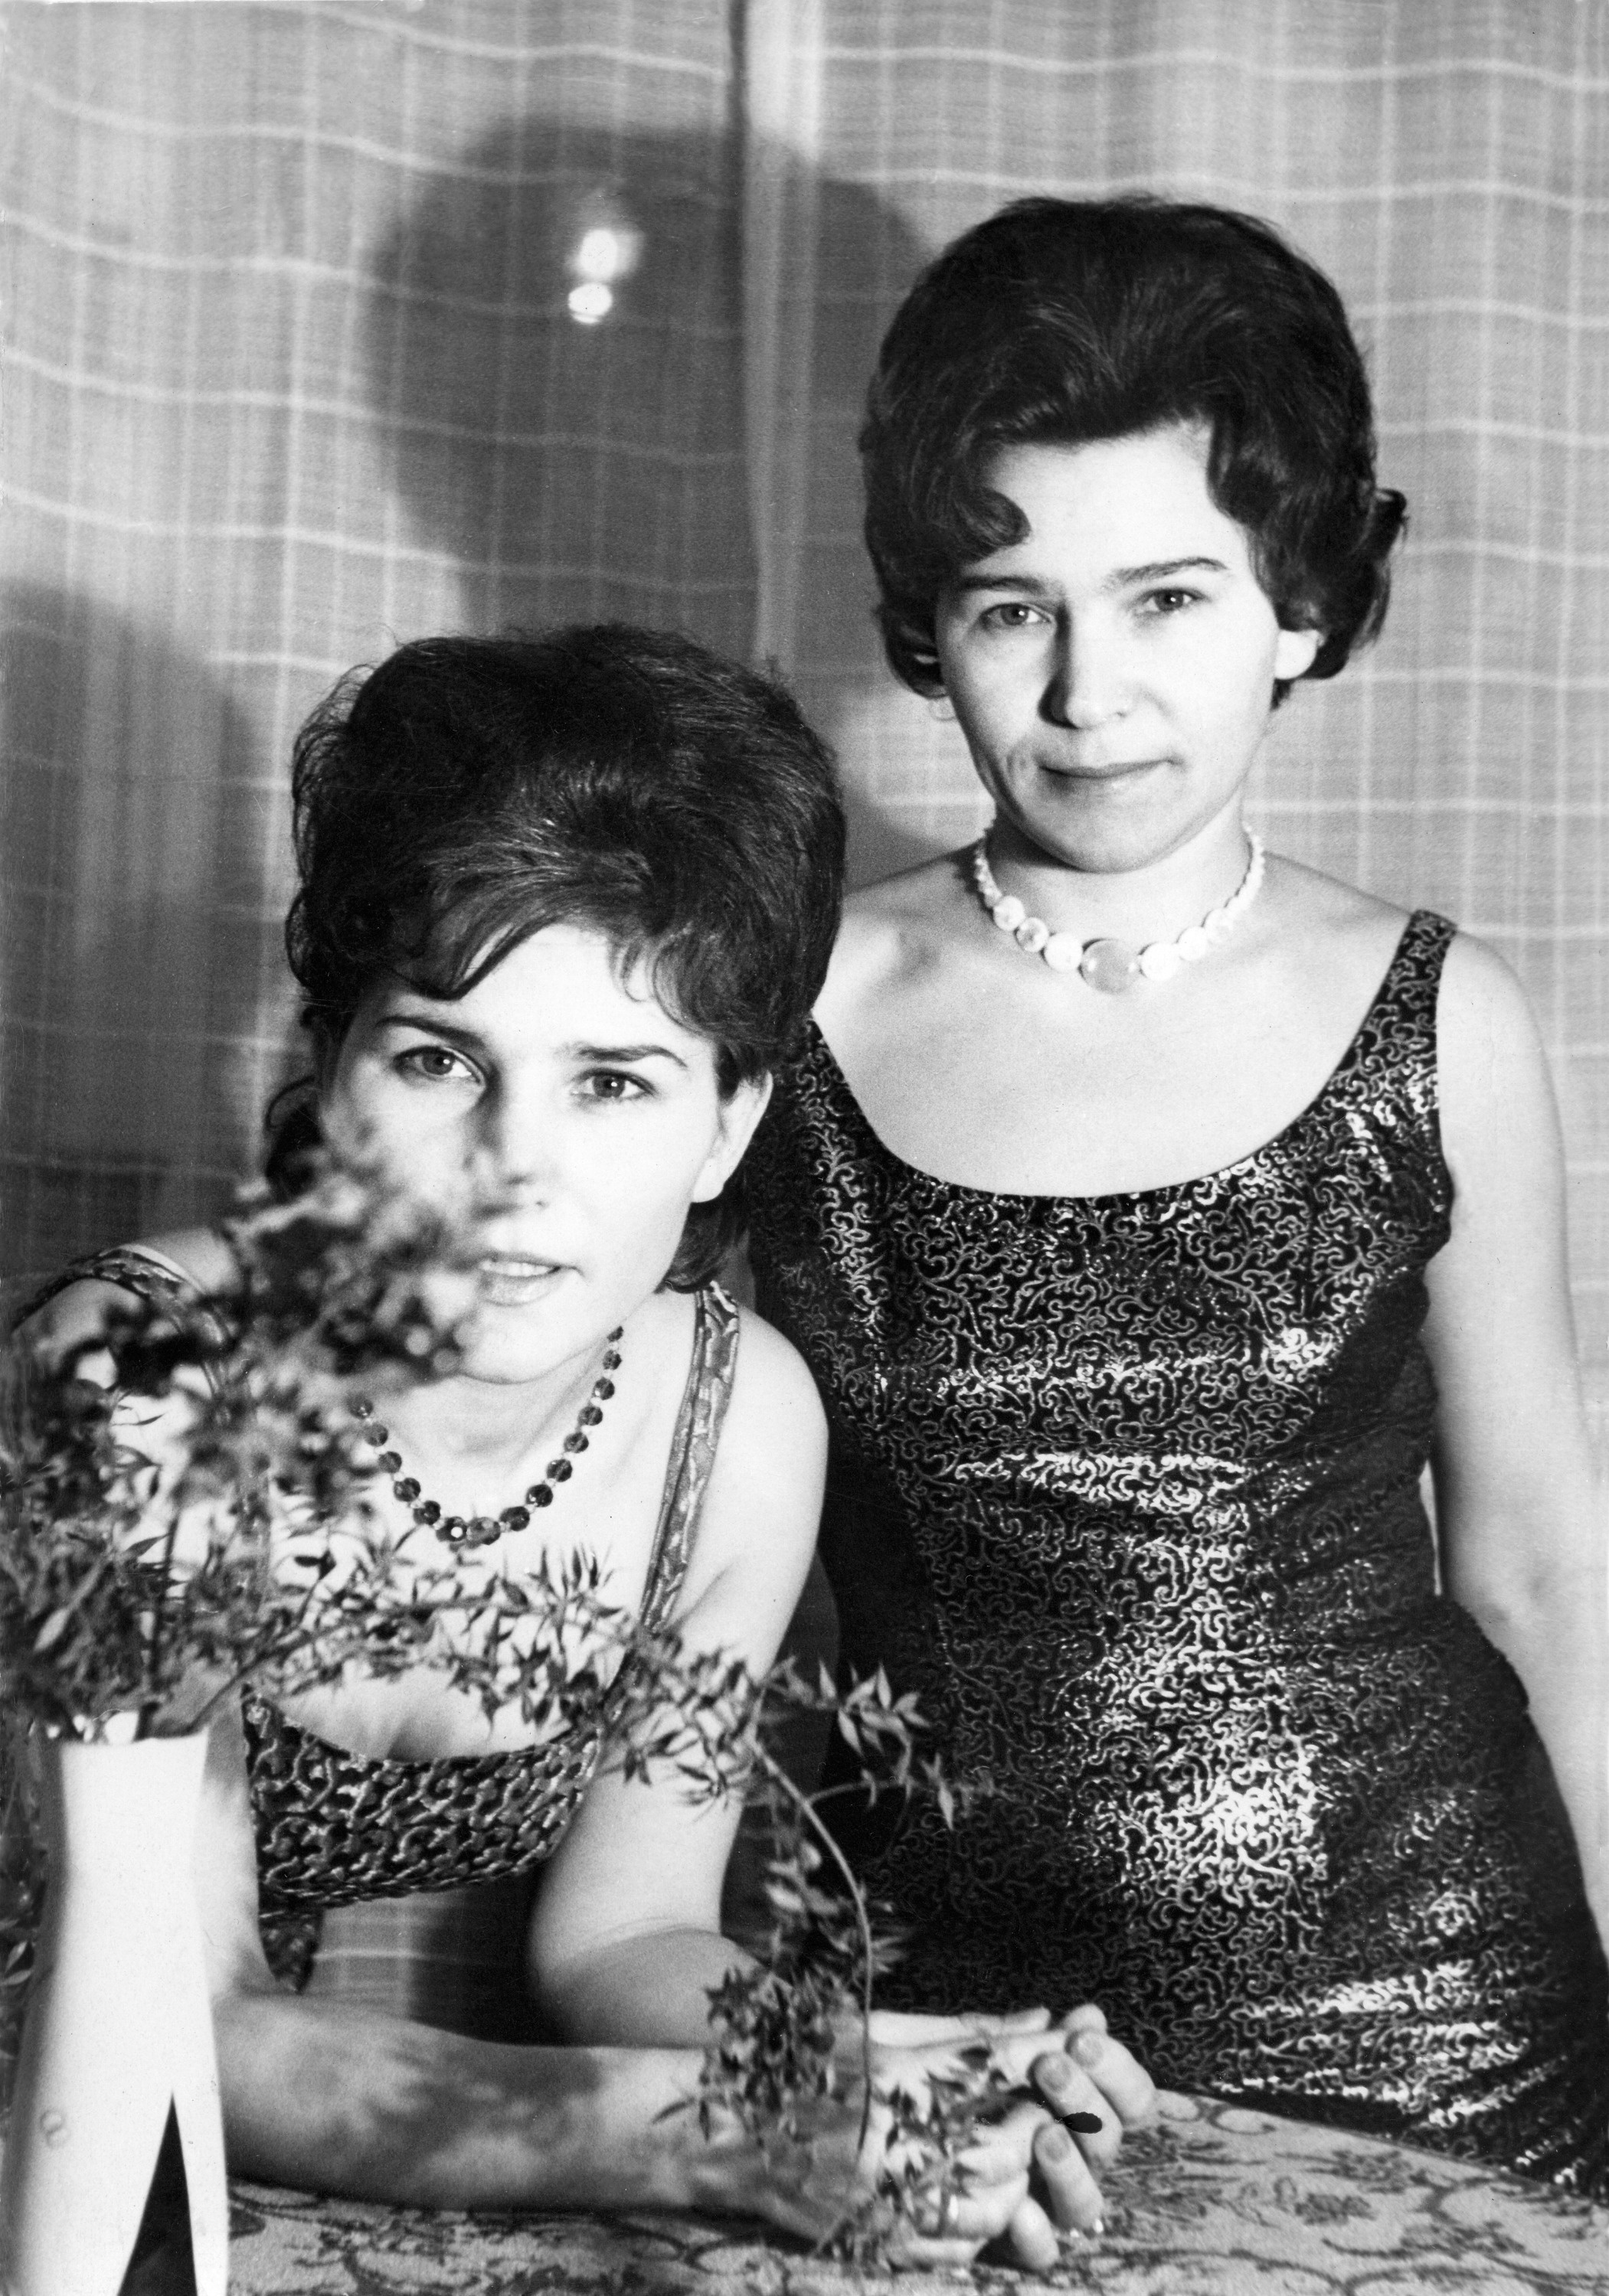 Младшая сестра Роза (слева) помогала Наине разнообразить гардероб вещами из ГДР. <br />Фото 1967 г.